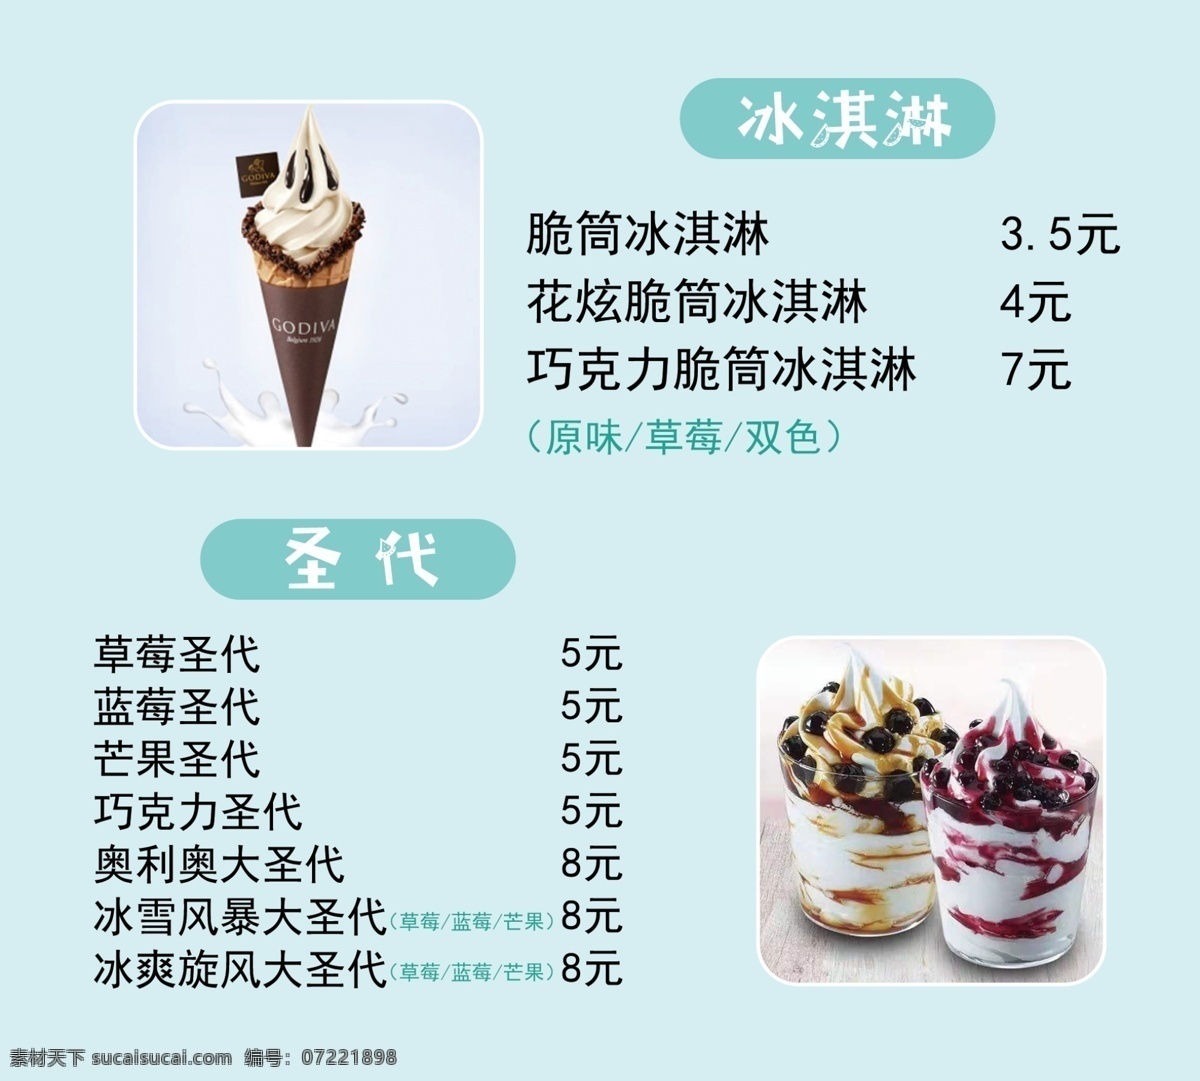 冰淇淋价格表 冰淇淋灯片 圣代价格表 圣代 分层